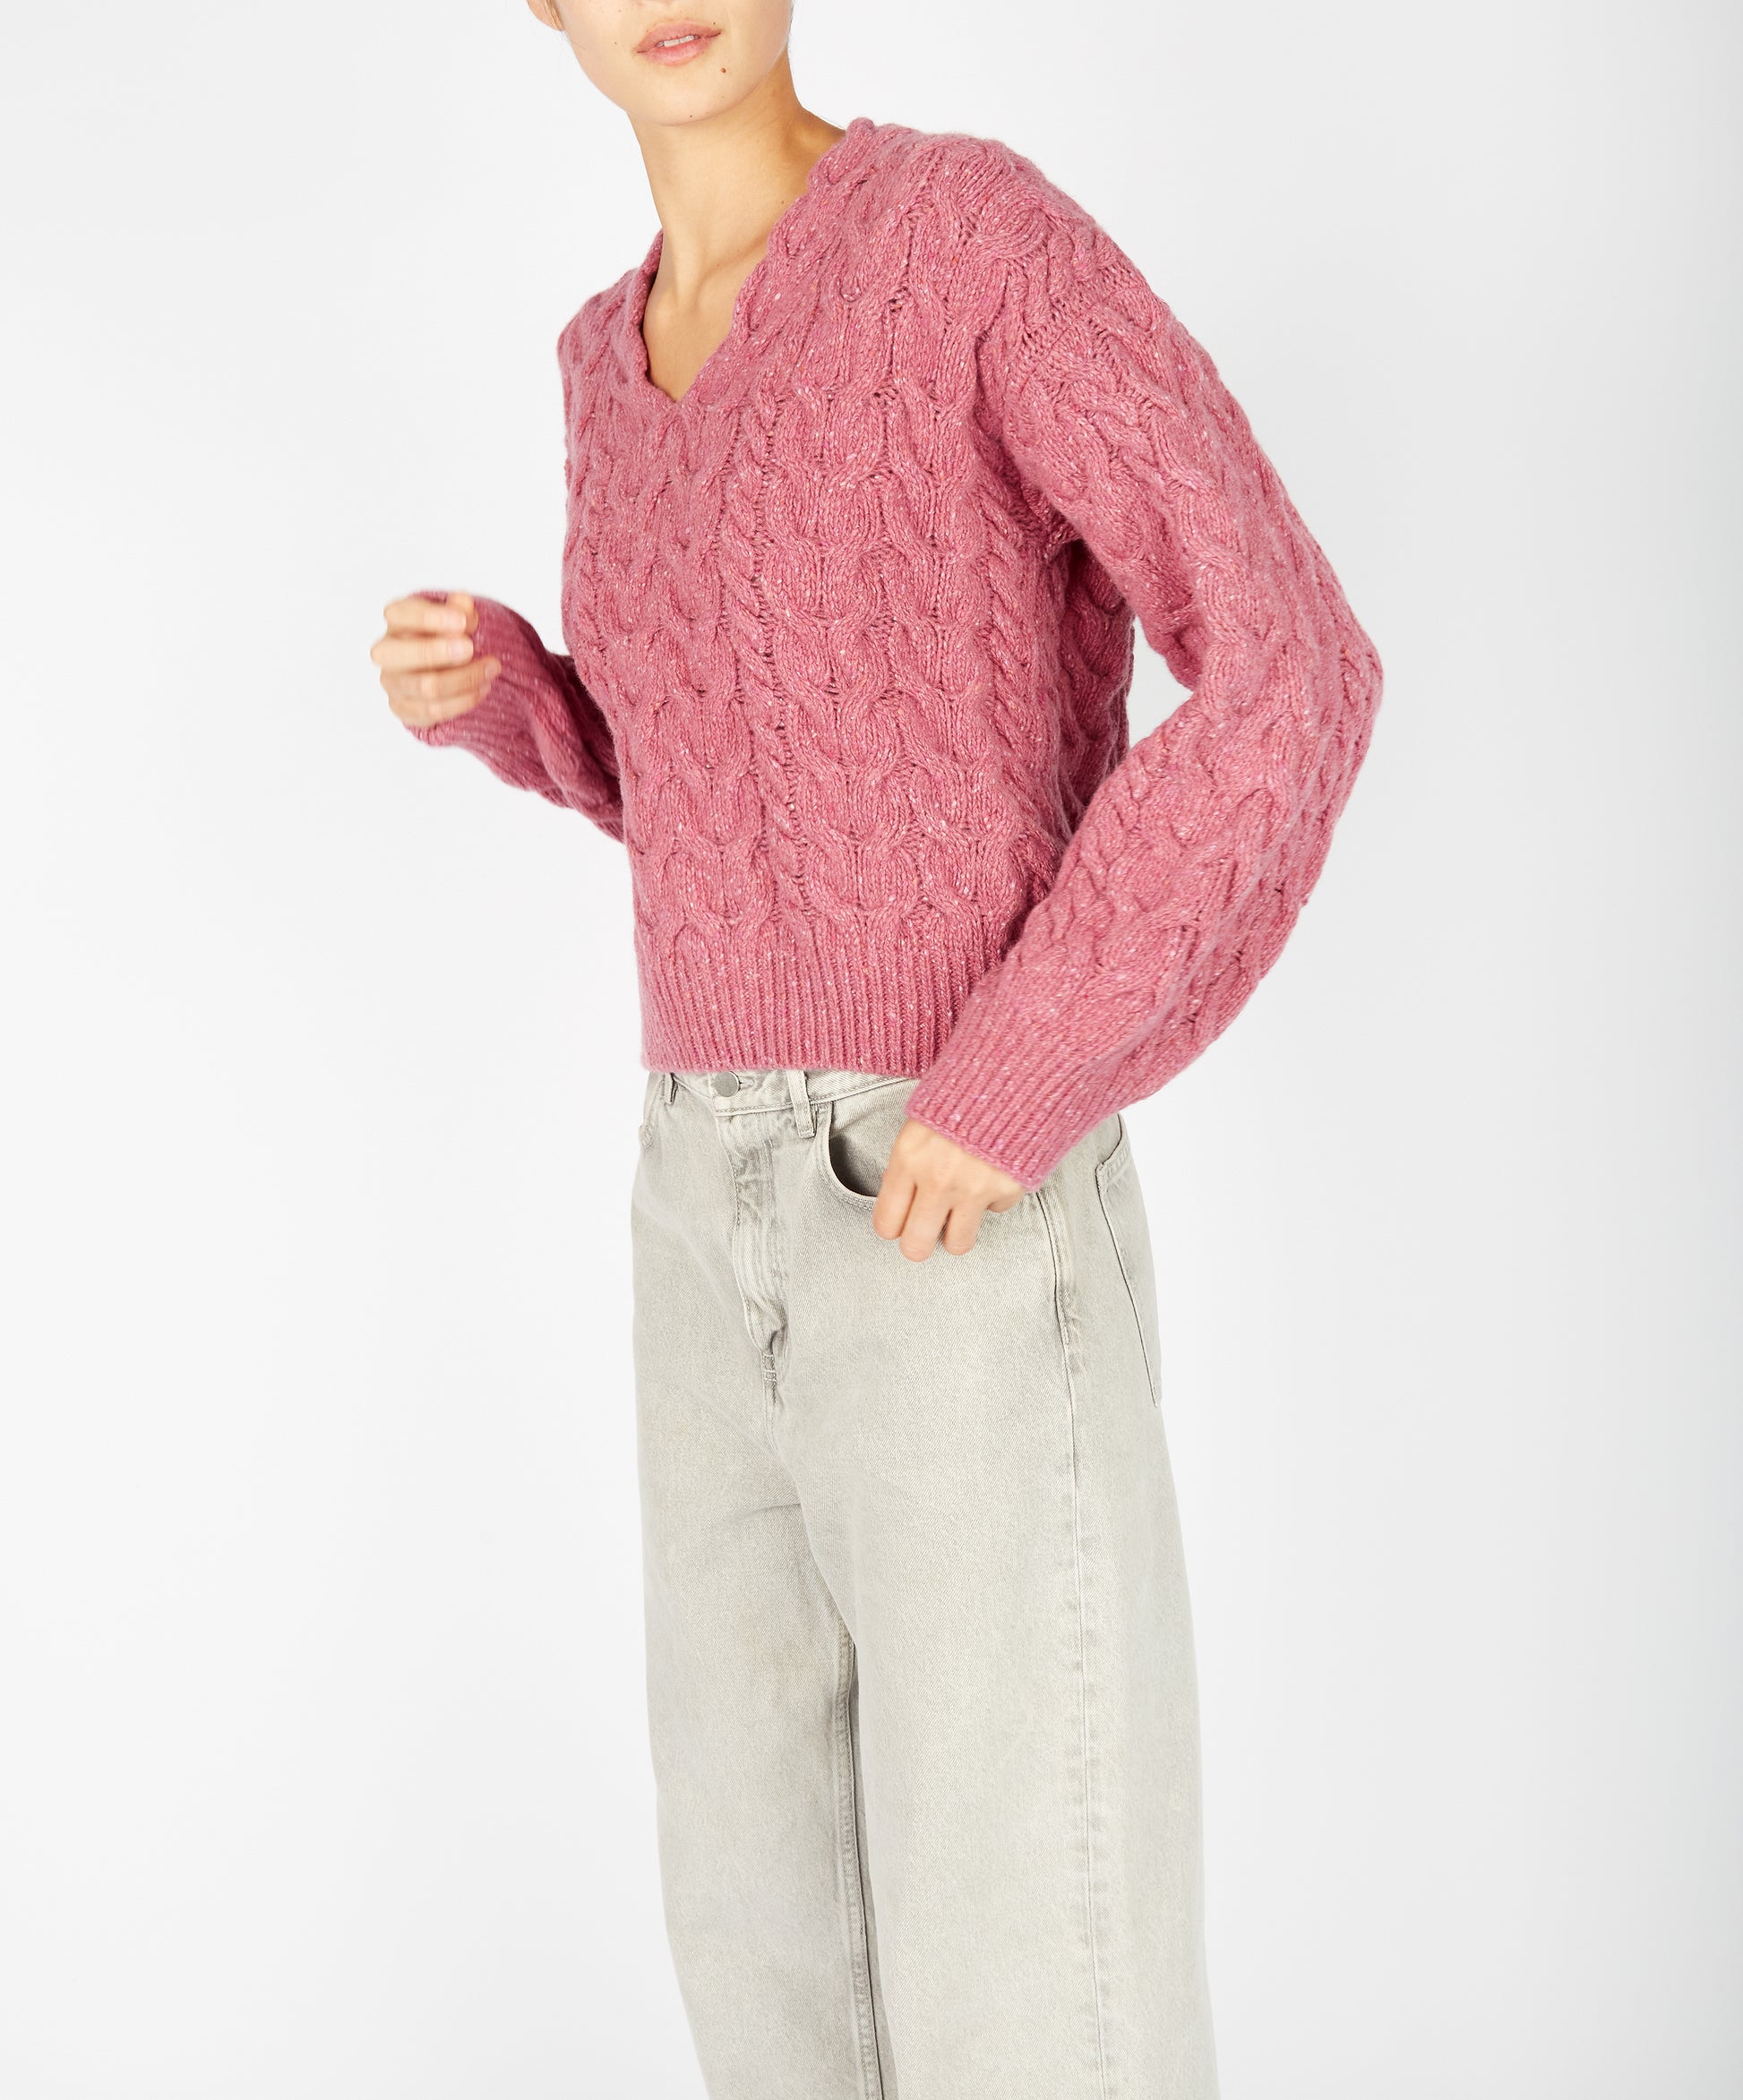 IrelandsEye Knitwear Hapenny Horseshoe Sweater Bubblegum pink